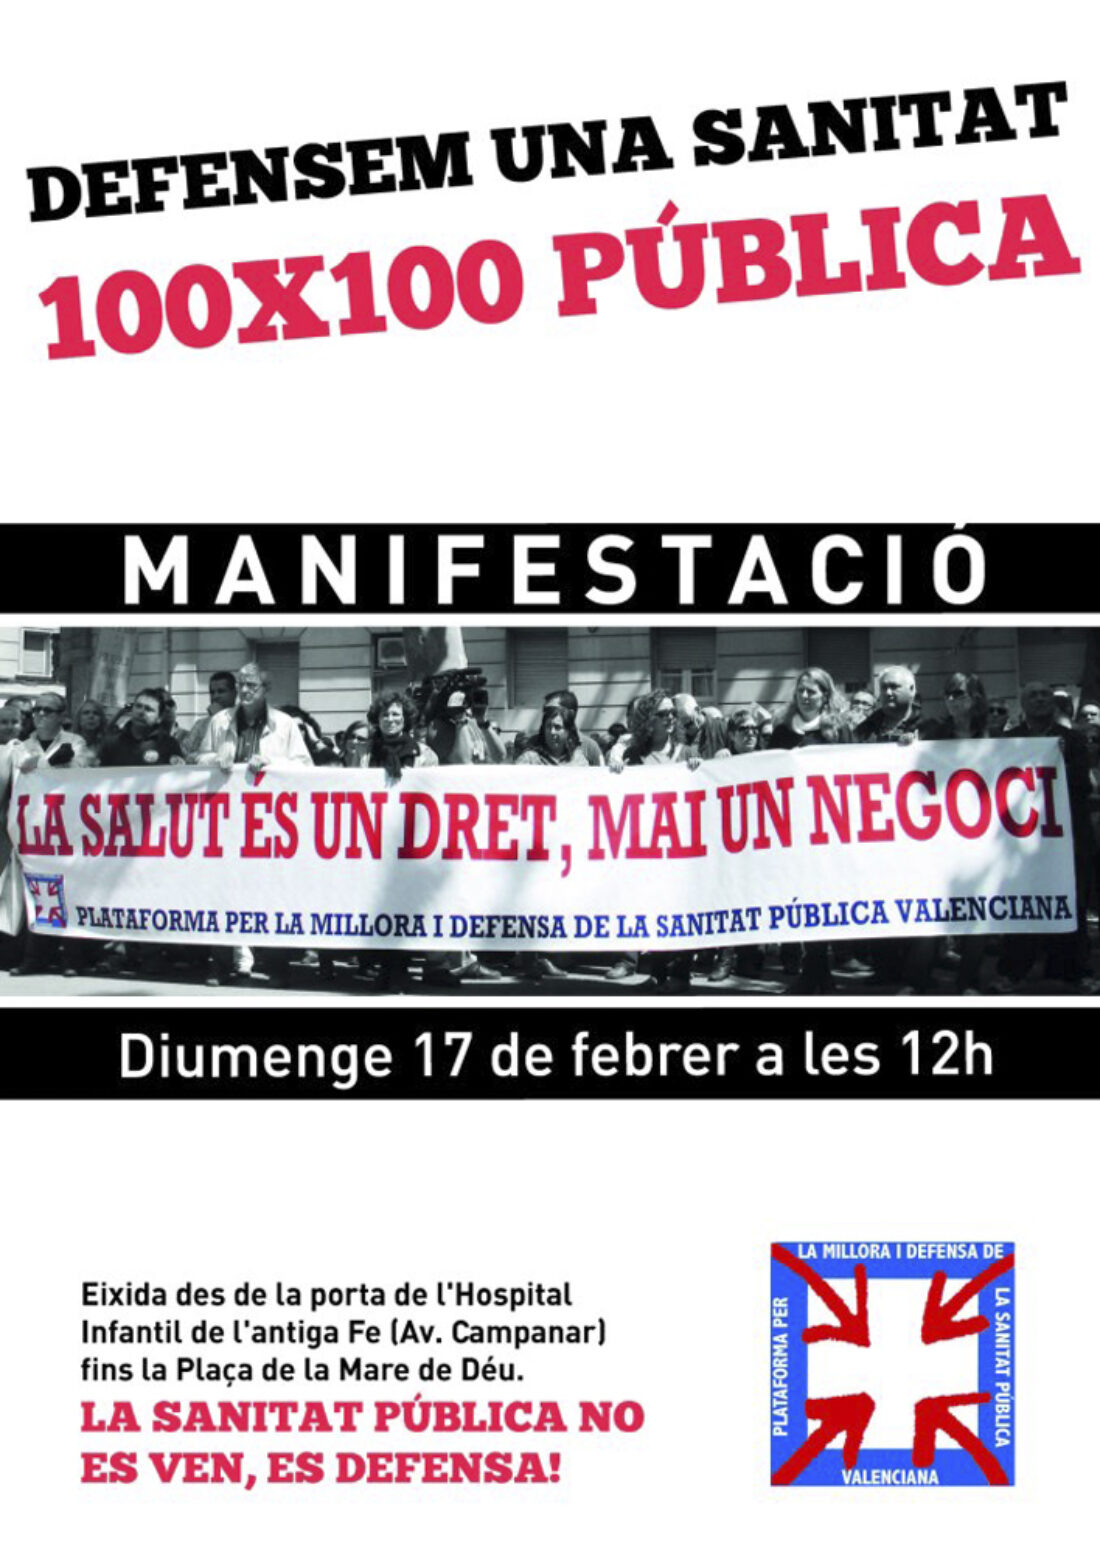 17-f Valencia: Manifestación en defensa de una sanidad 100×100 pública